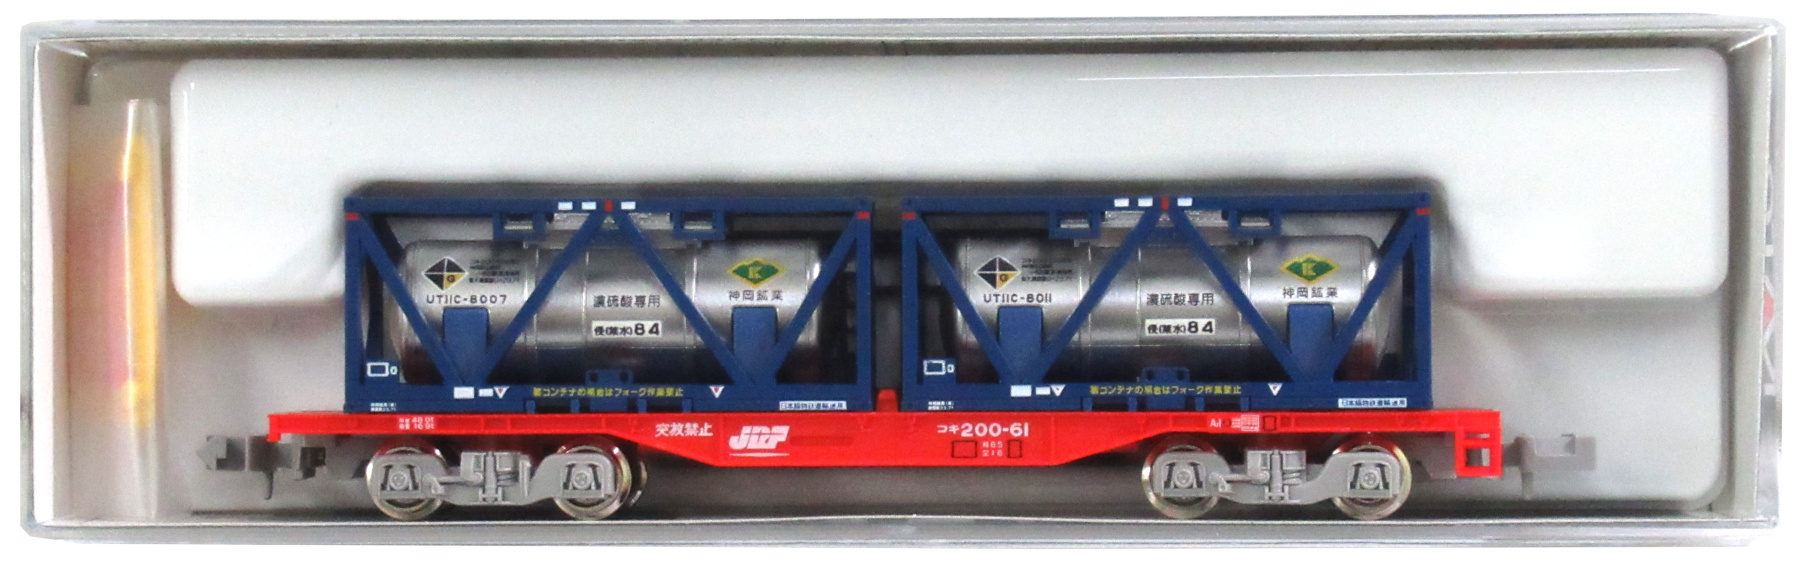 公式]鉄道模型(8042コキ200 (UT11C「神岡鉱業」コンテナ2個積載))商品